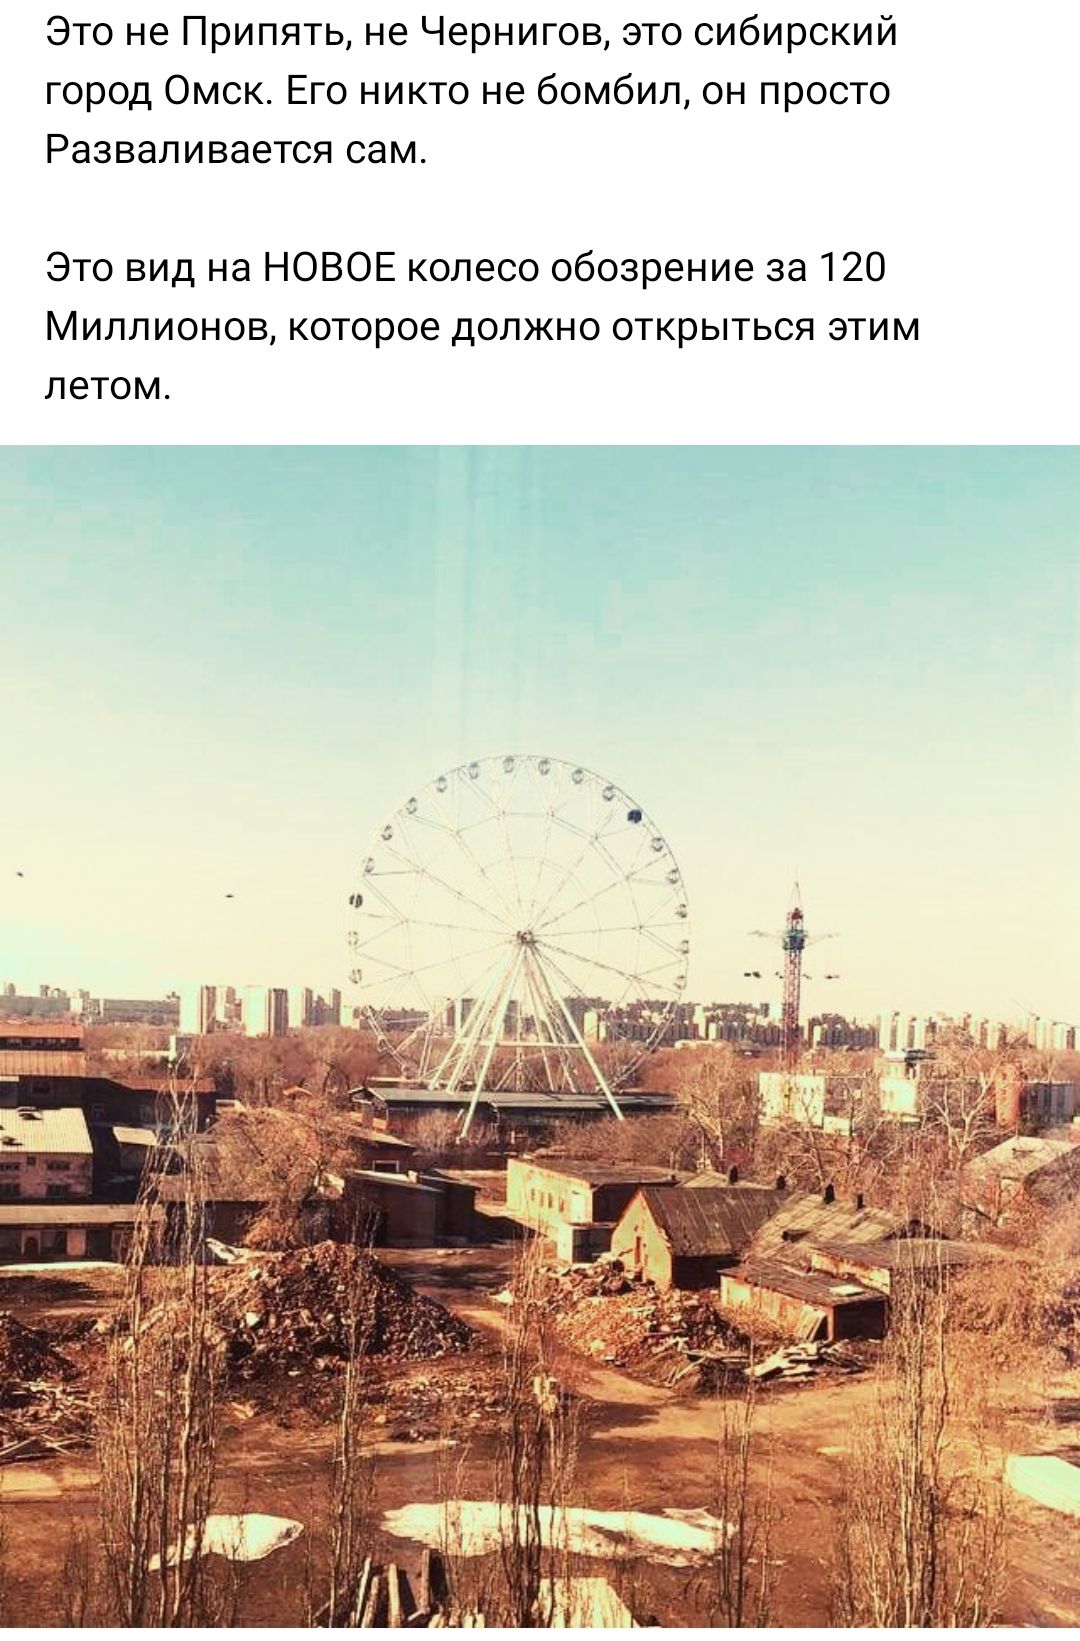 Это не Припять не Чернигов это сибирский город Омск Его никто не бомбил он просто Разваливается сам Это вид на НОВОЕ колесо обозрение за 120 Миллионов которое должно открыться этим летом